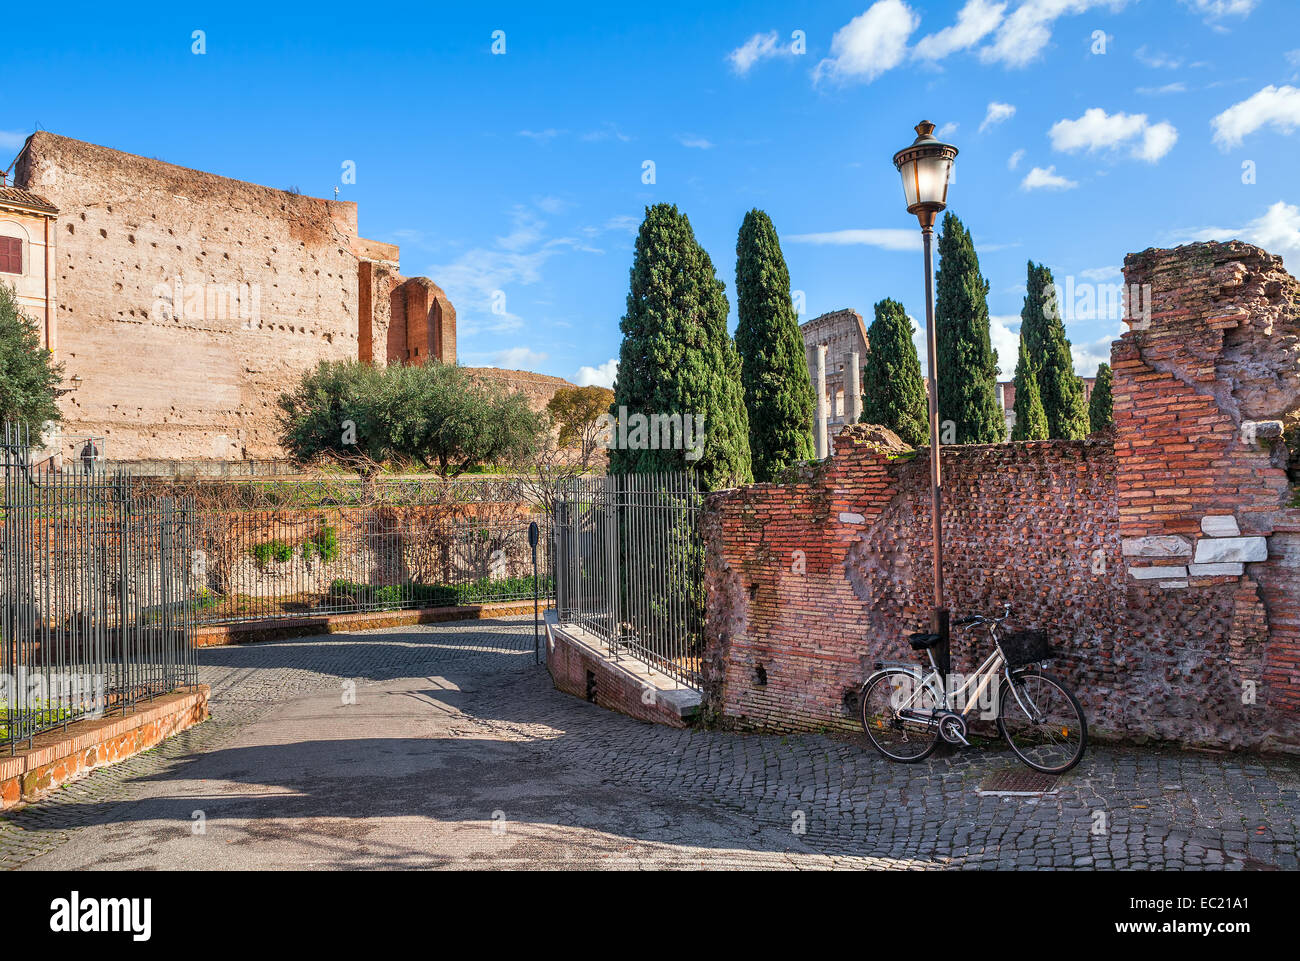 Stadt Fahrradständer stützte sich auf alte Mauer und Laternenpfahl auf schmalen Straße in Rom, Italien. Stockfoto